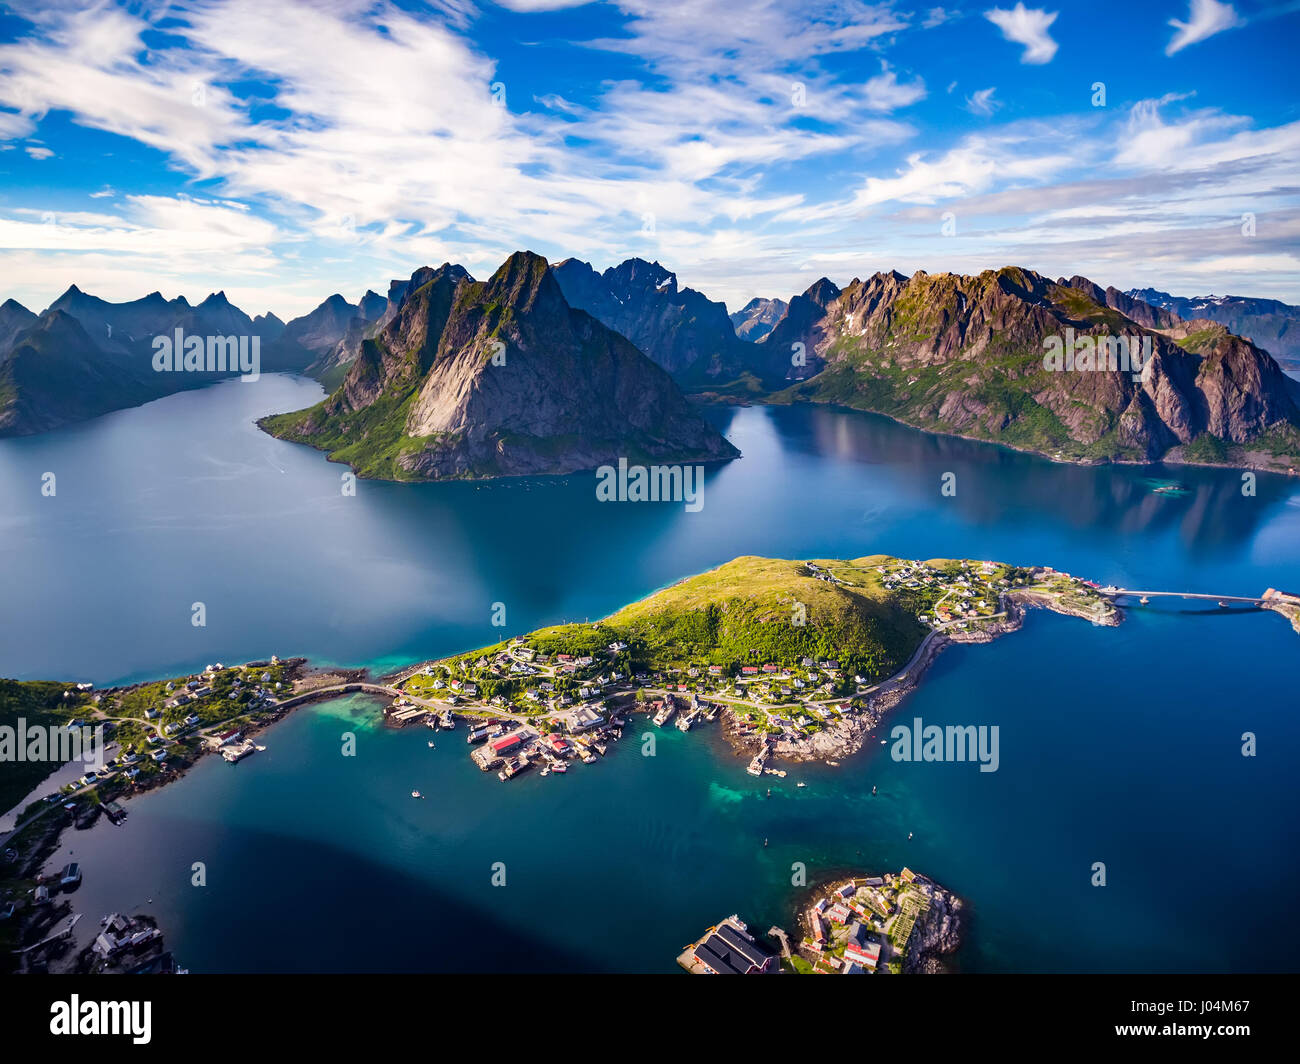 Le isole Lofoten sono un arcipelago la fotografia aerea., Norvegia. È noto per un caratteristico paesaggio con sensazionali montagne e picchi, mare aperto e shel Foto Stock